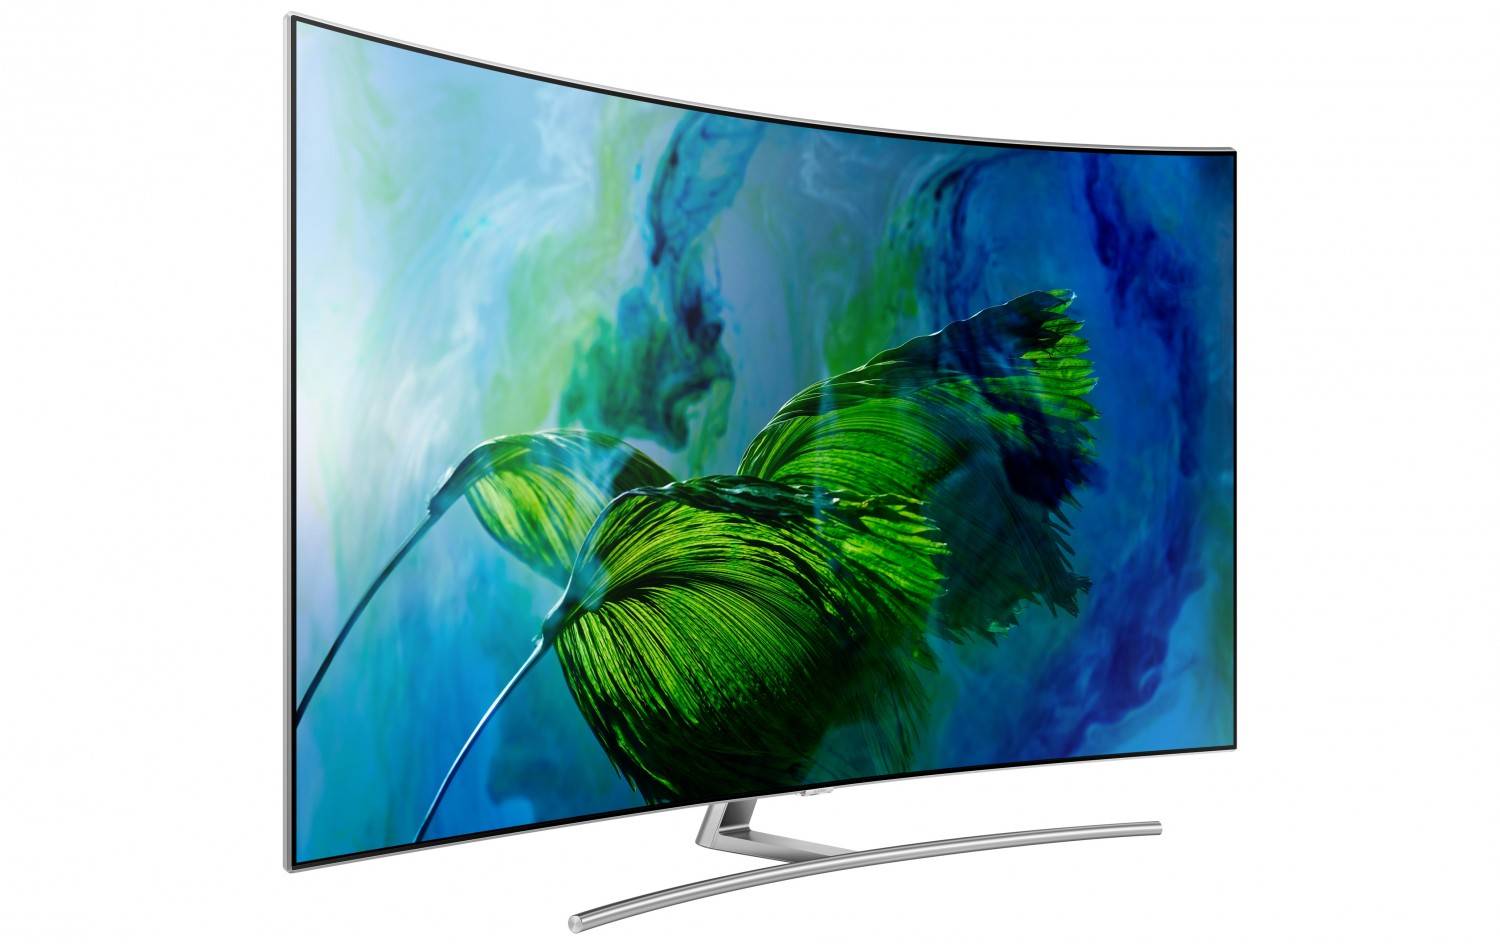 TV Heute letzter Tag: Samsung erstattet 150 Euro beim Kauf eines QLED TVs - News, Bild 1